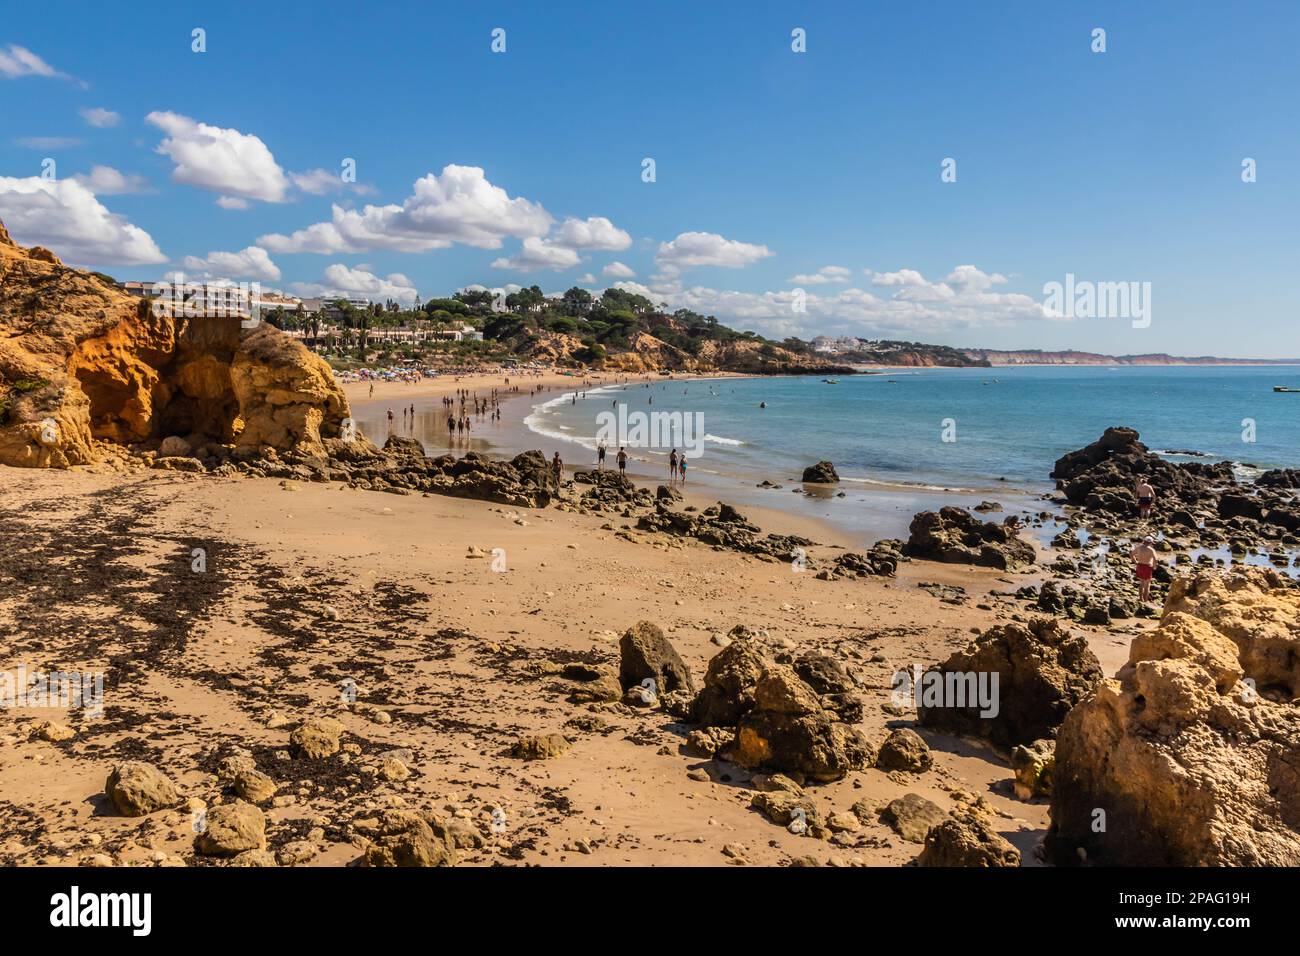 Praia Santa Eulalia, Albufeira, Algarve, Portugal Stock Photo